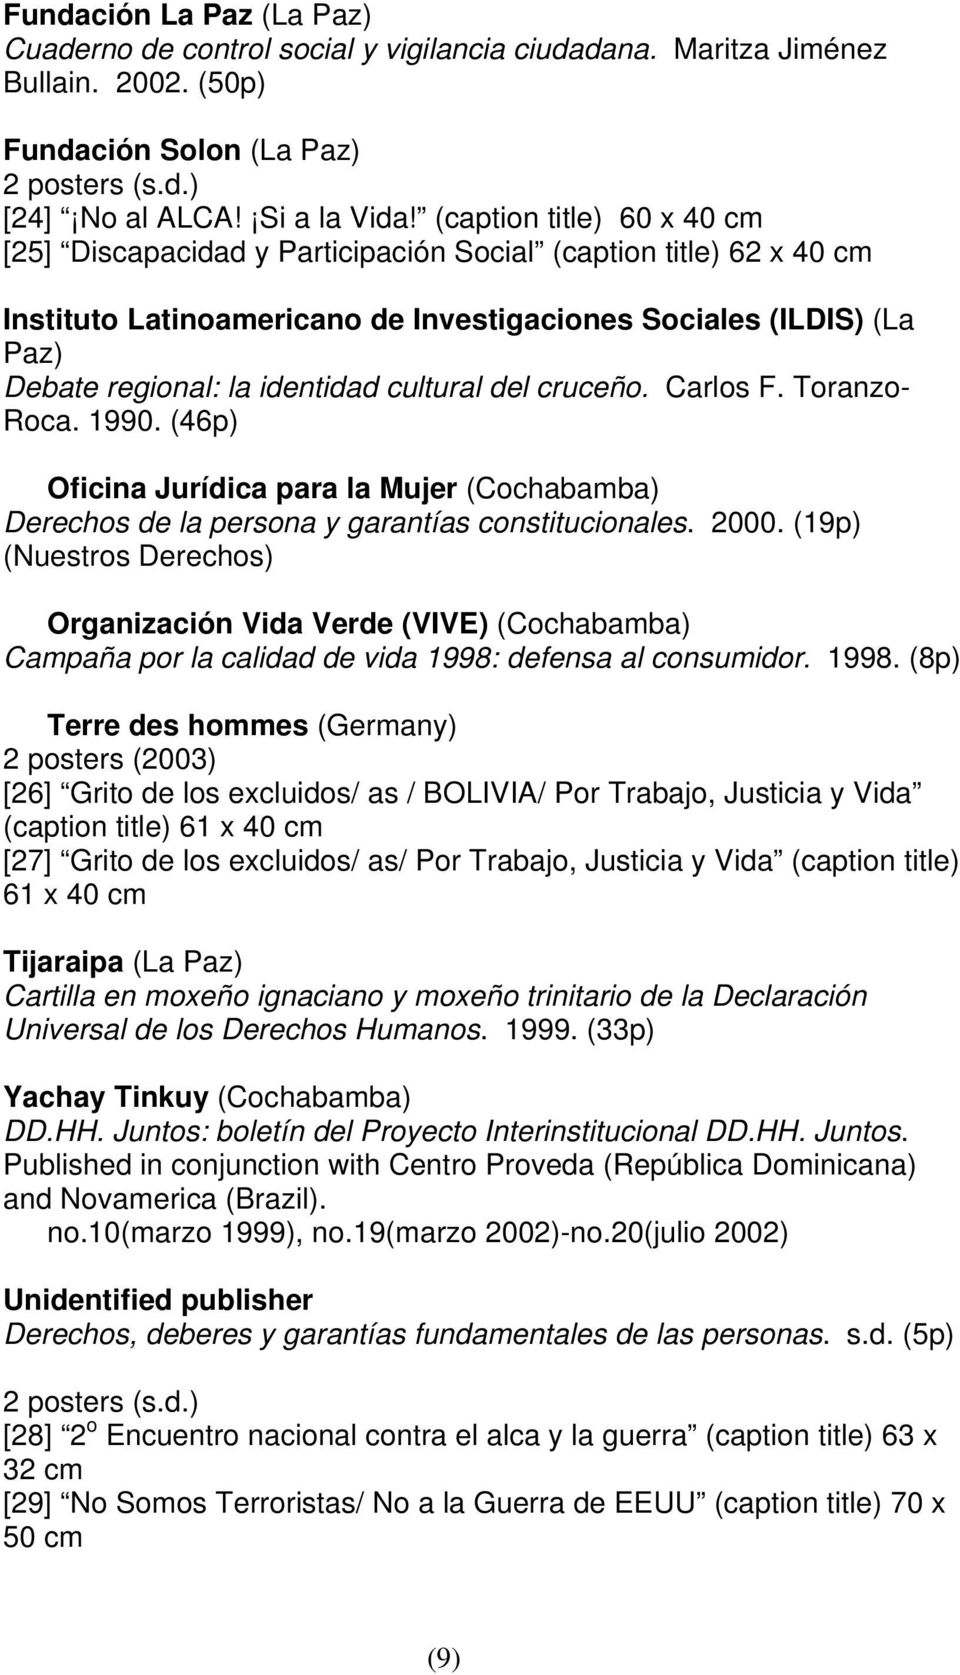 cultural del cruceño. Carlos F. Toranzo- Roca. 1990. (46p) Oficina Jurídica para la Mujer (Cochabamba) Derechos de la persona y garantías constitucionales. 2000.